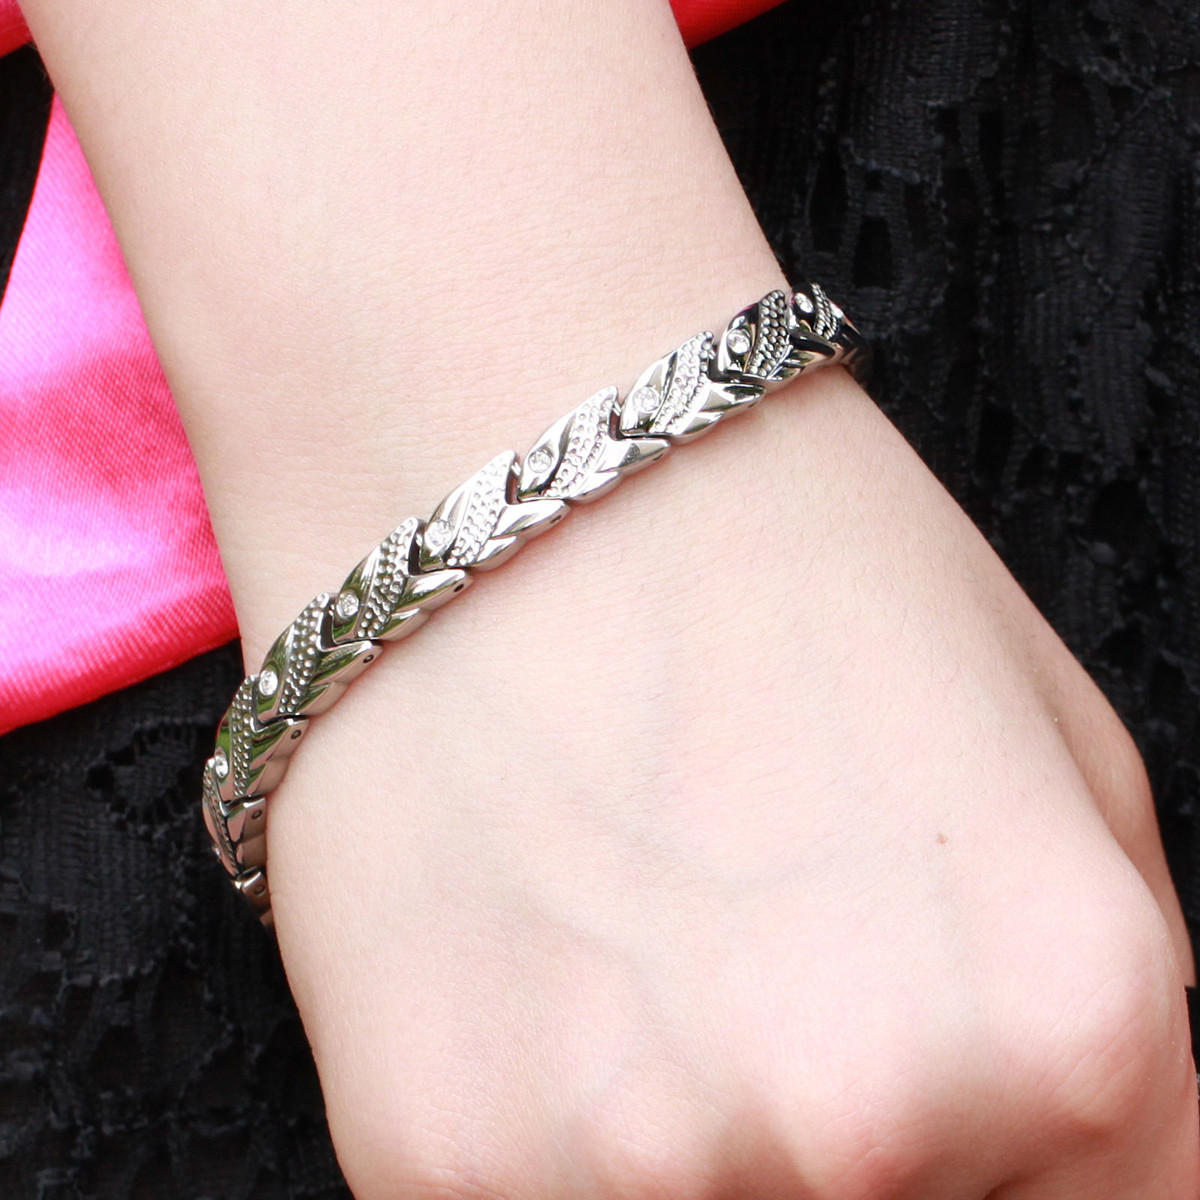 Magnetic-Healing-Health-Women-Bracelet-Stainless-Steel-Jewelry-1133108